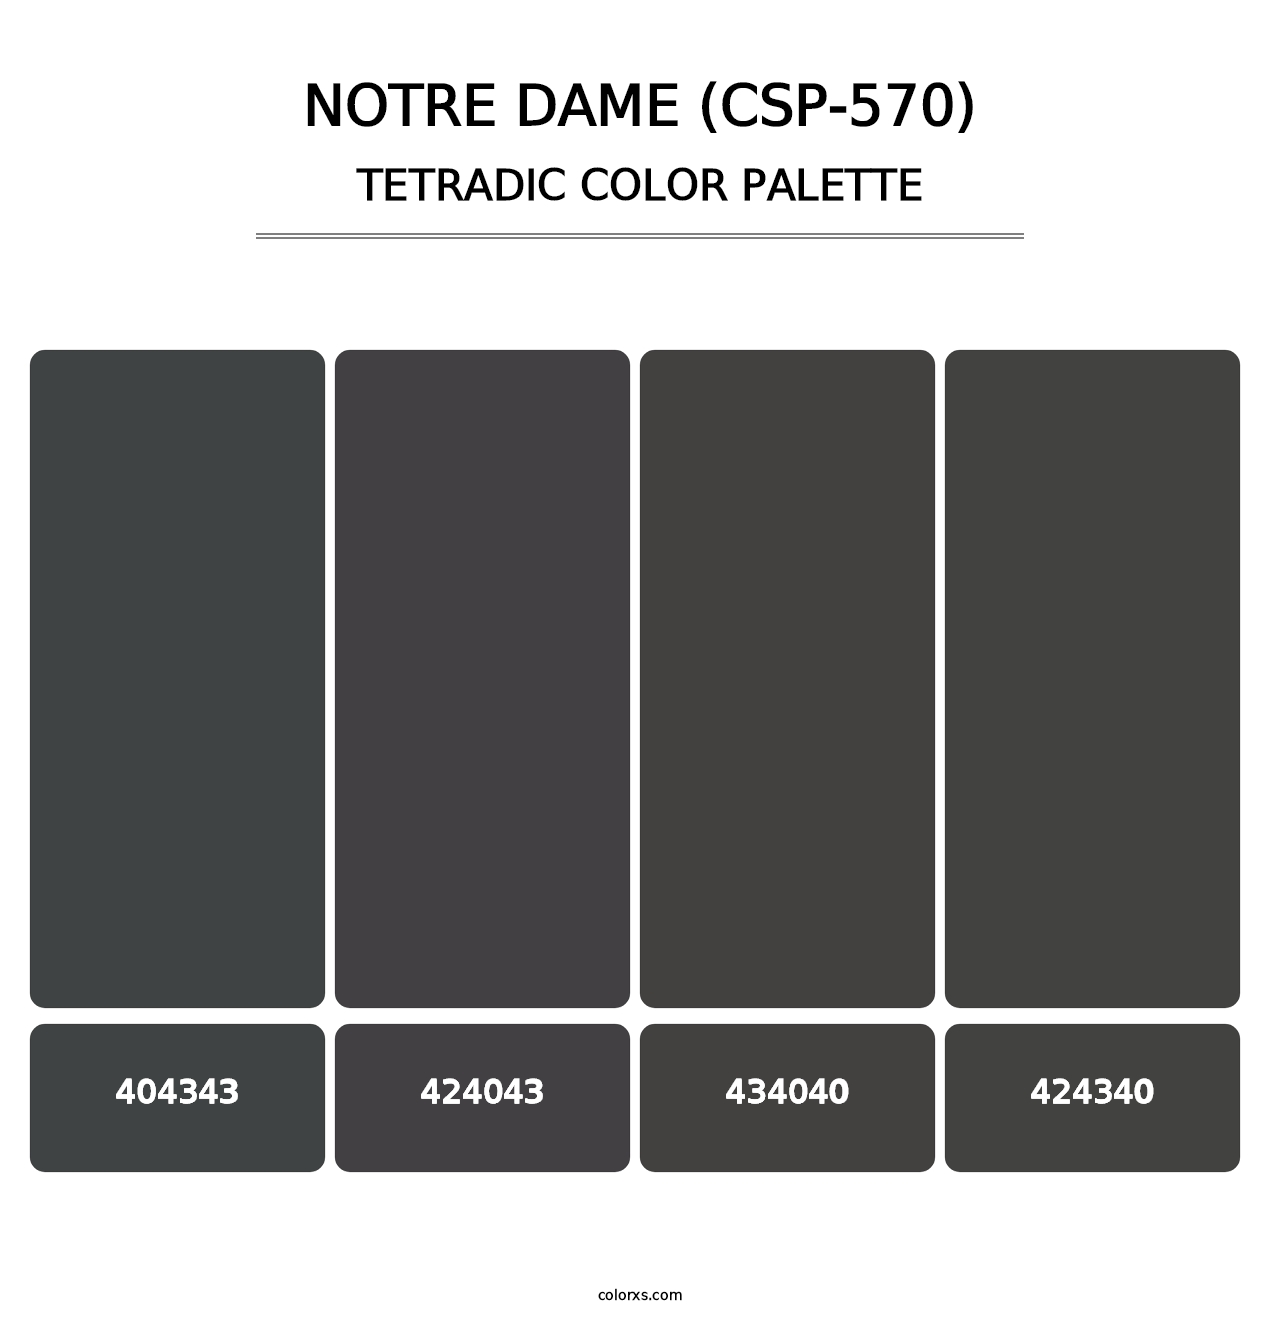 Notre Dame (CSP-570) - Tetradic Color Palette